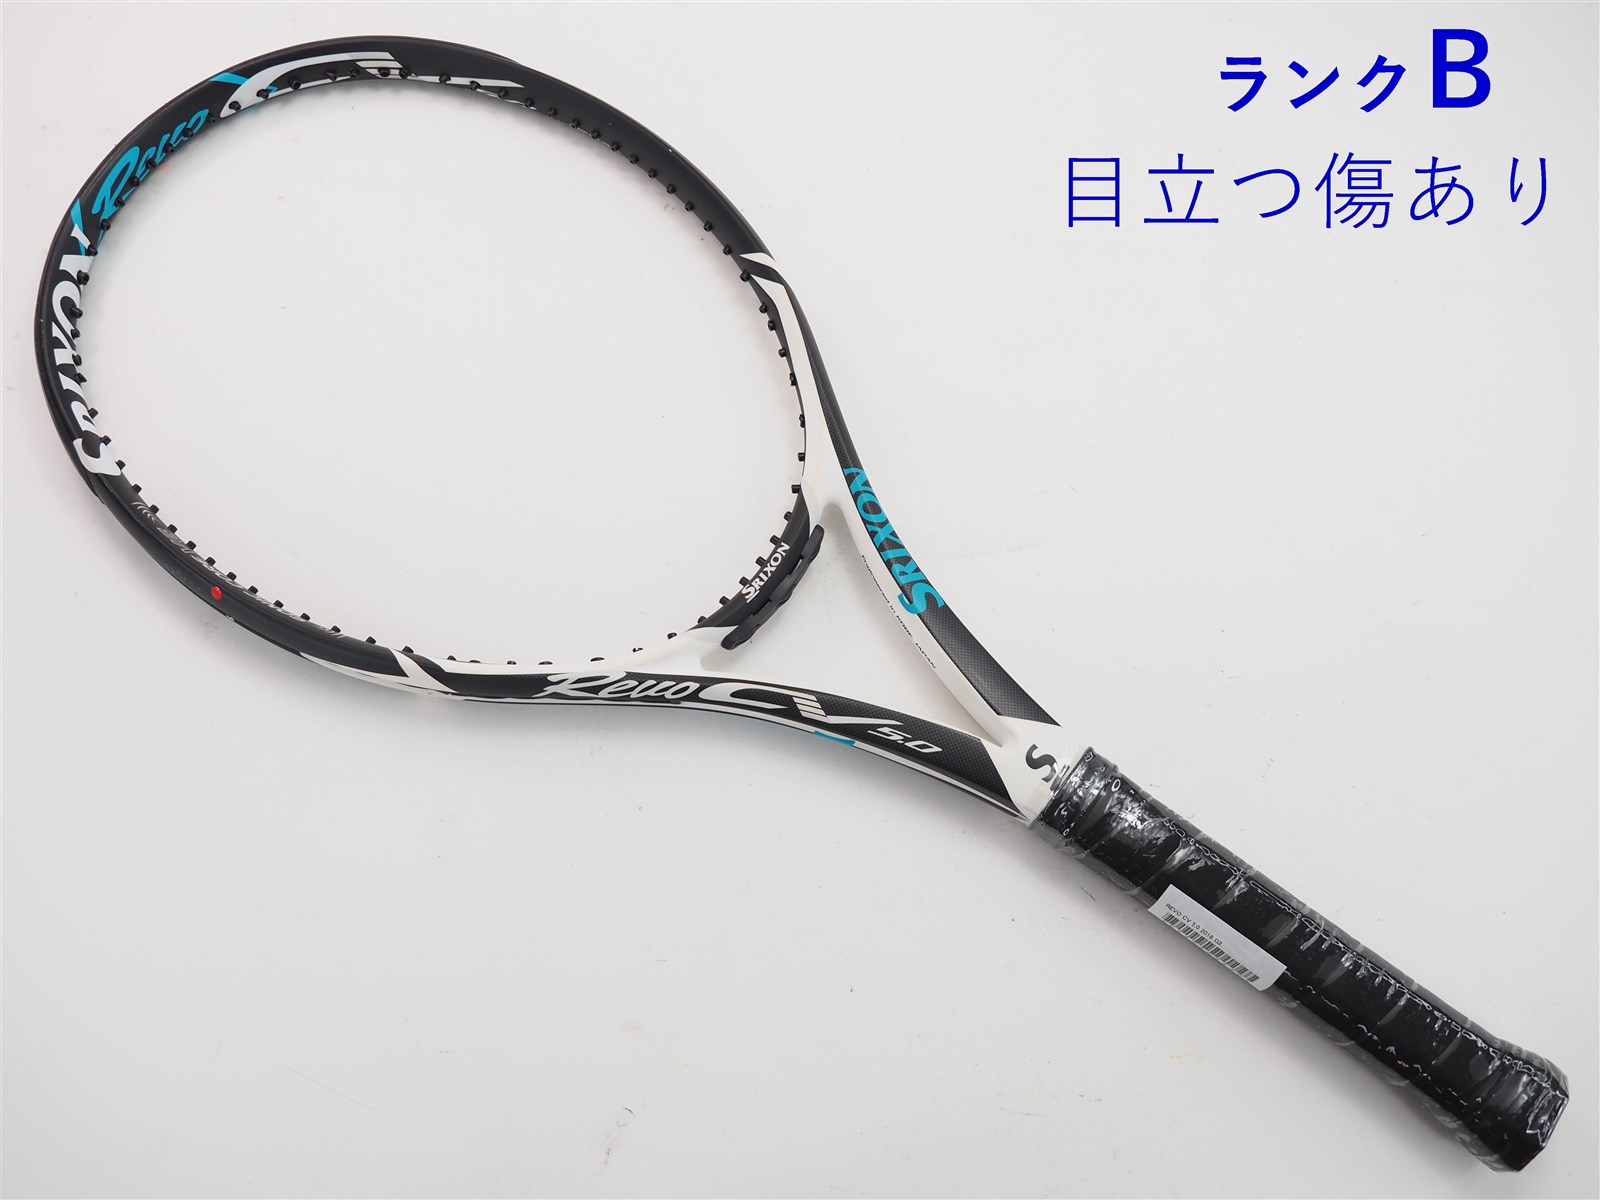 テニスラケット スリクソン レヴォ CV 3.0 ツアー 2016年モデル (G2